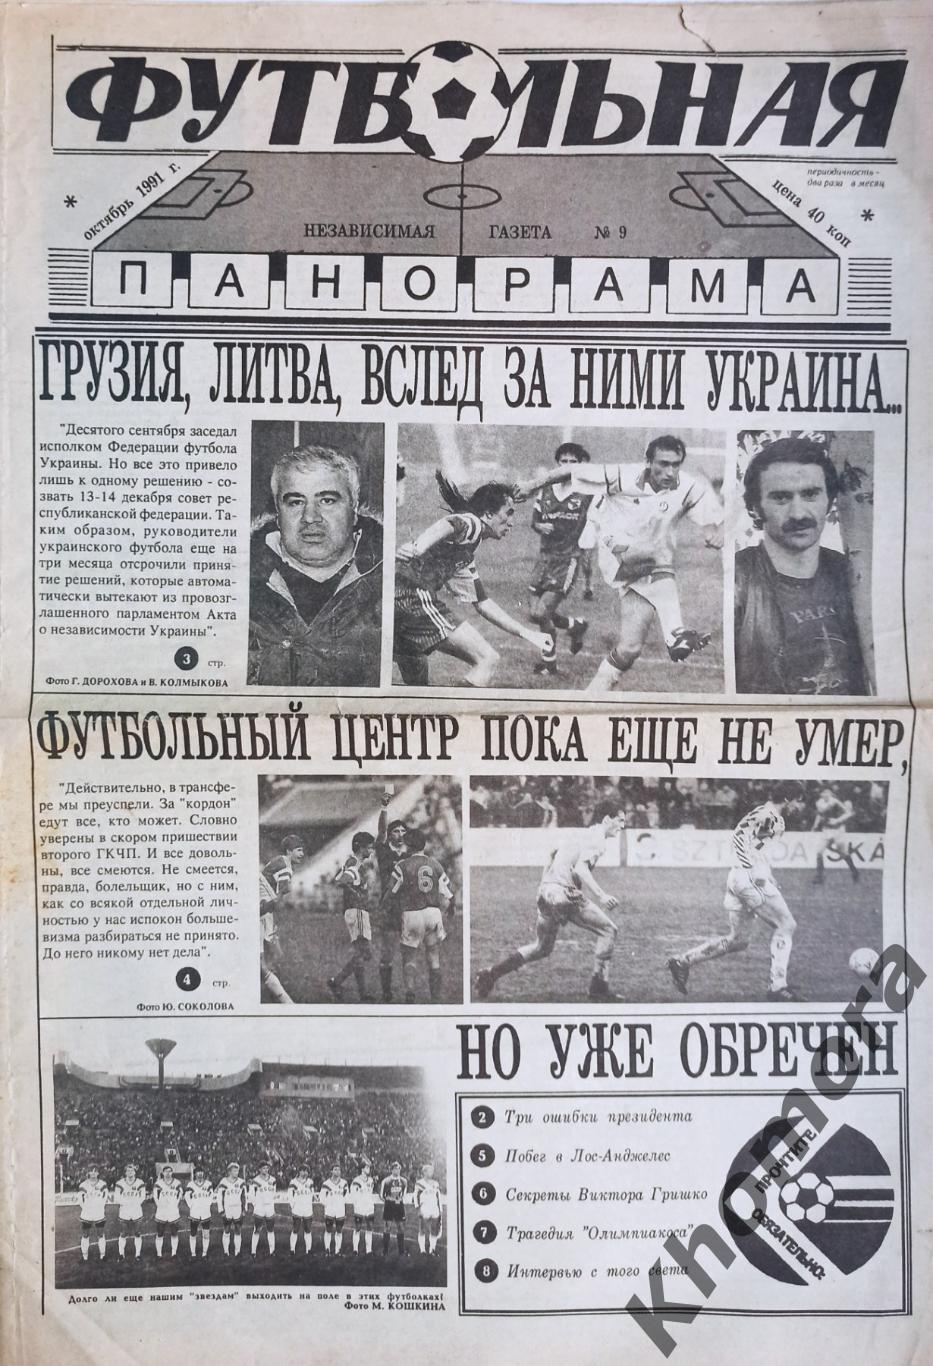 Футбольная панорама №9 (октябрь 1991 года) - спортивная газета